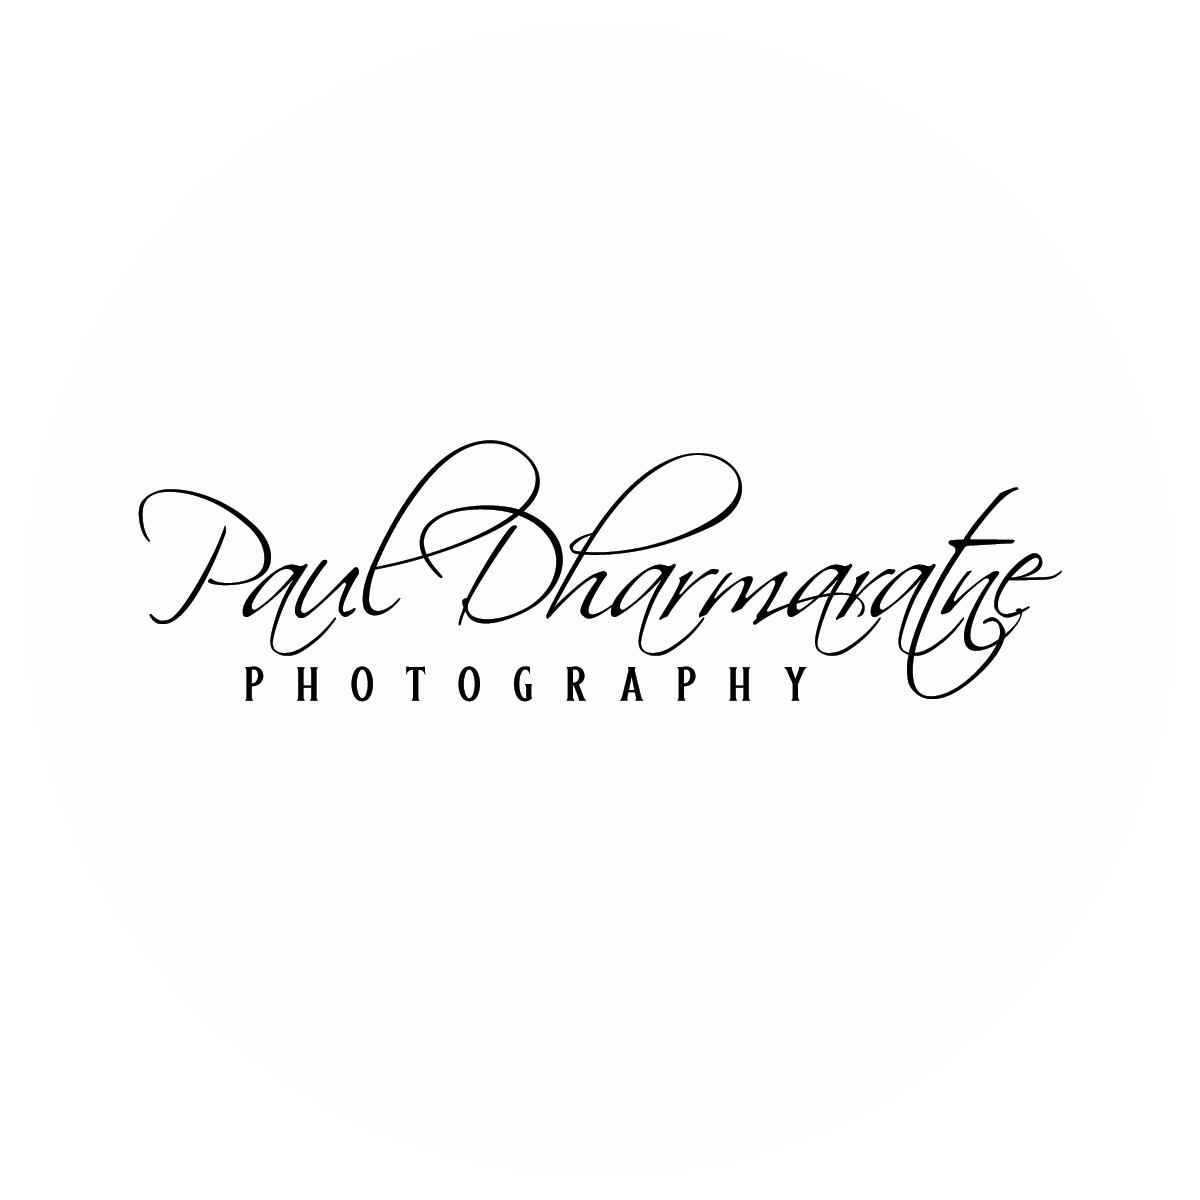 PaulDharmaratne logo